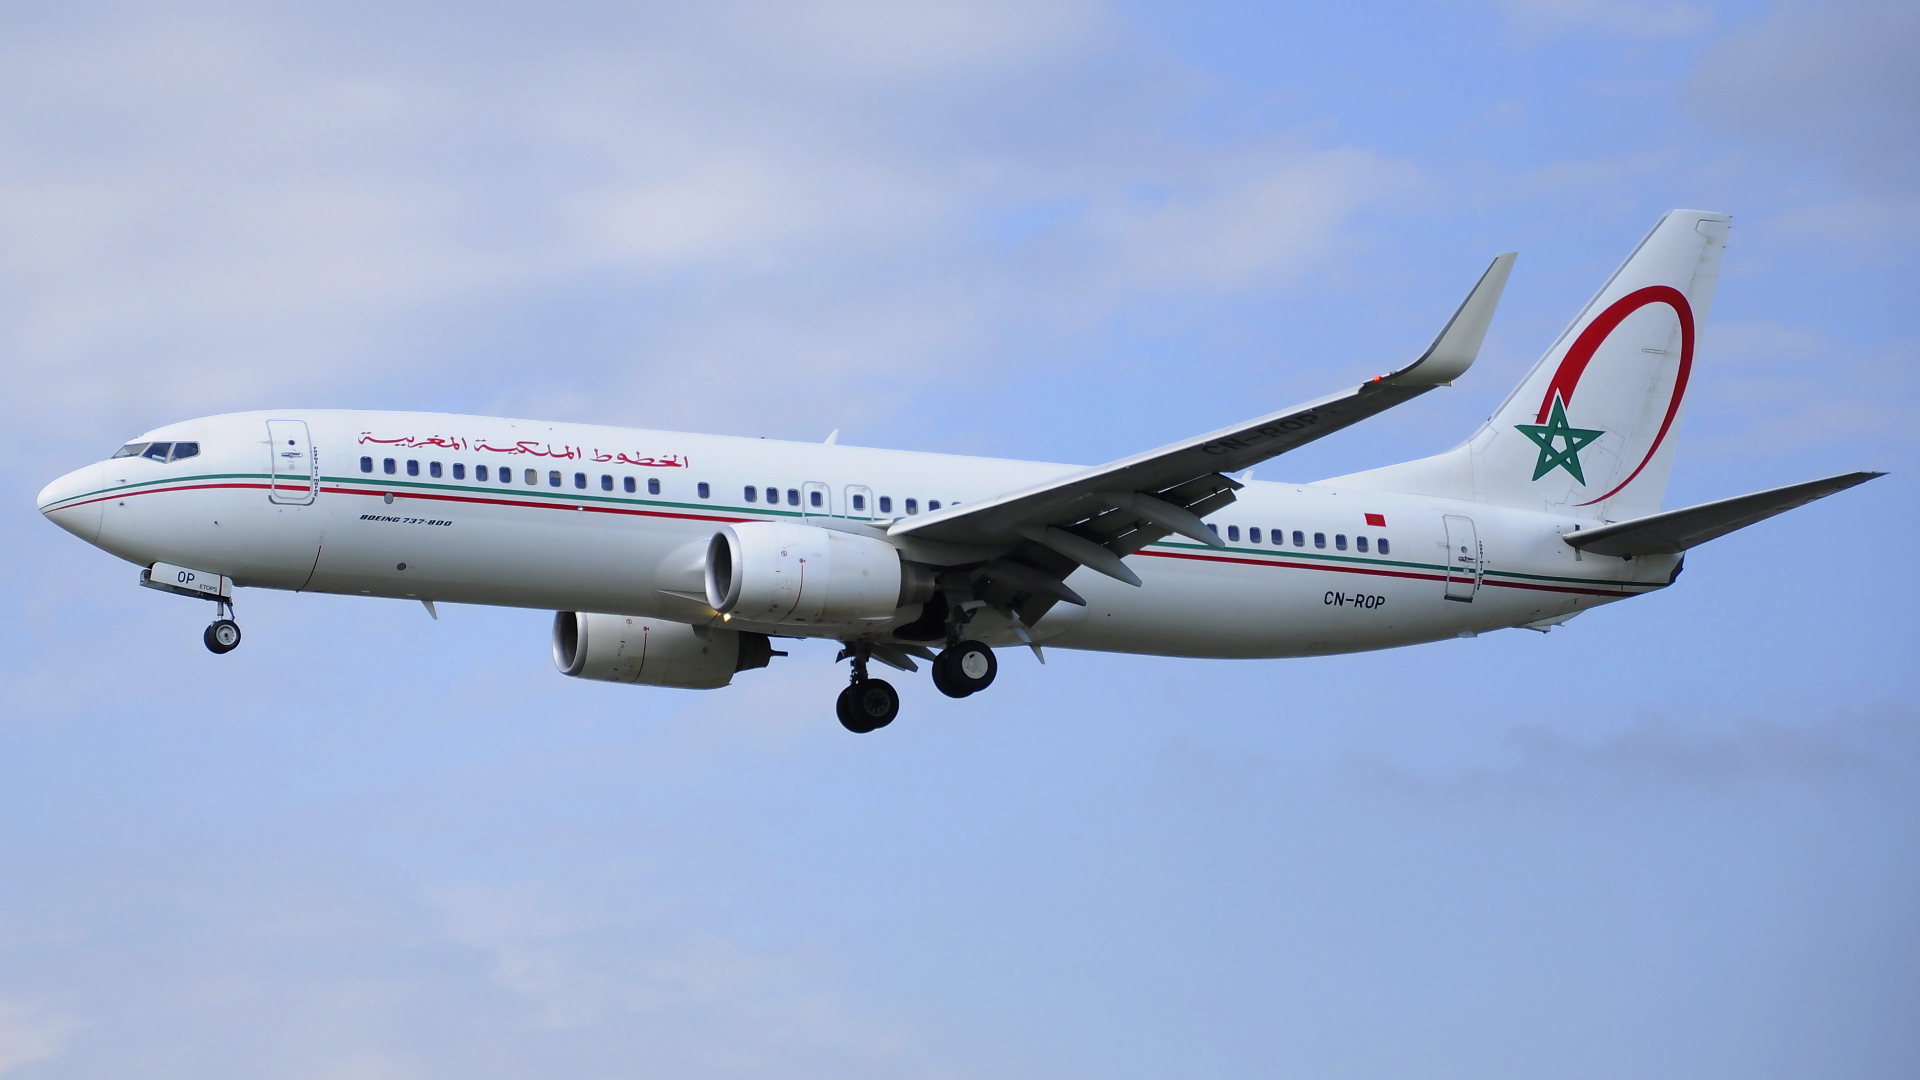 CN-ROP ✈ Royal Air Maroc Boeing 737-8B6(WL) @ London-Heathrow